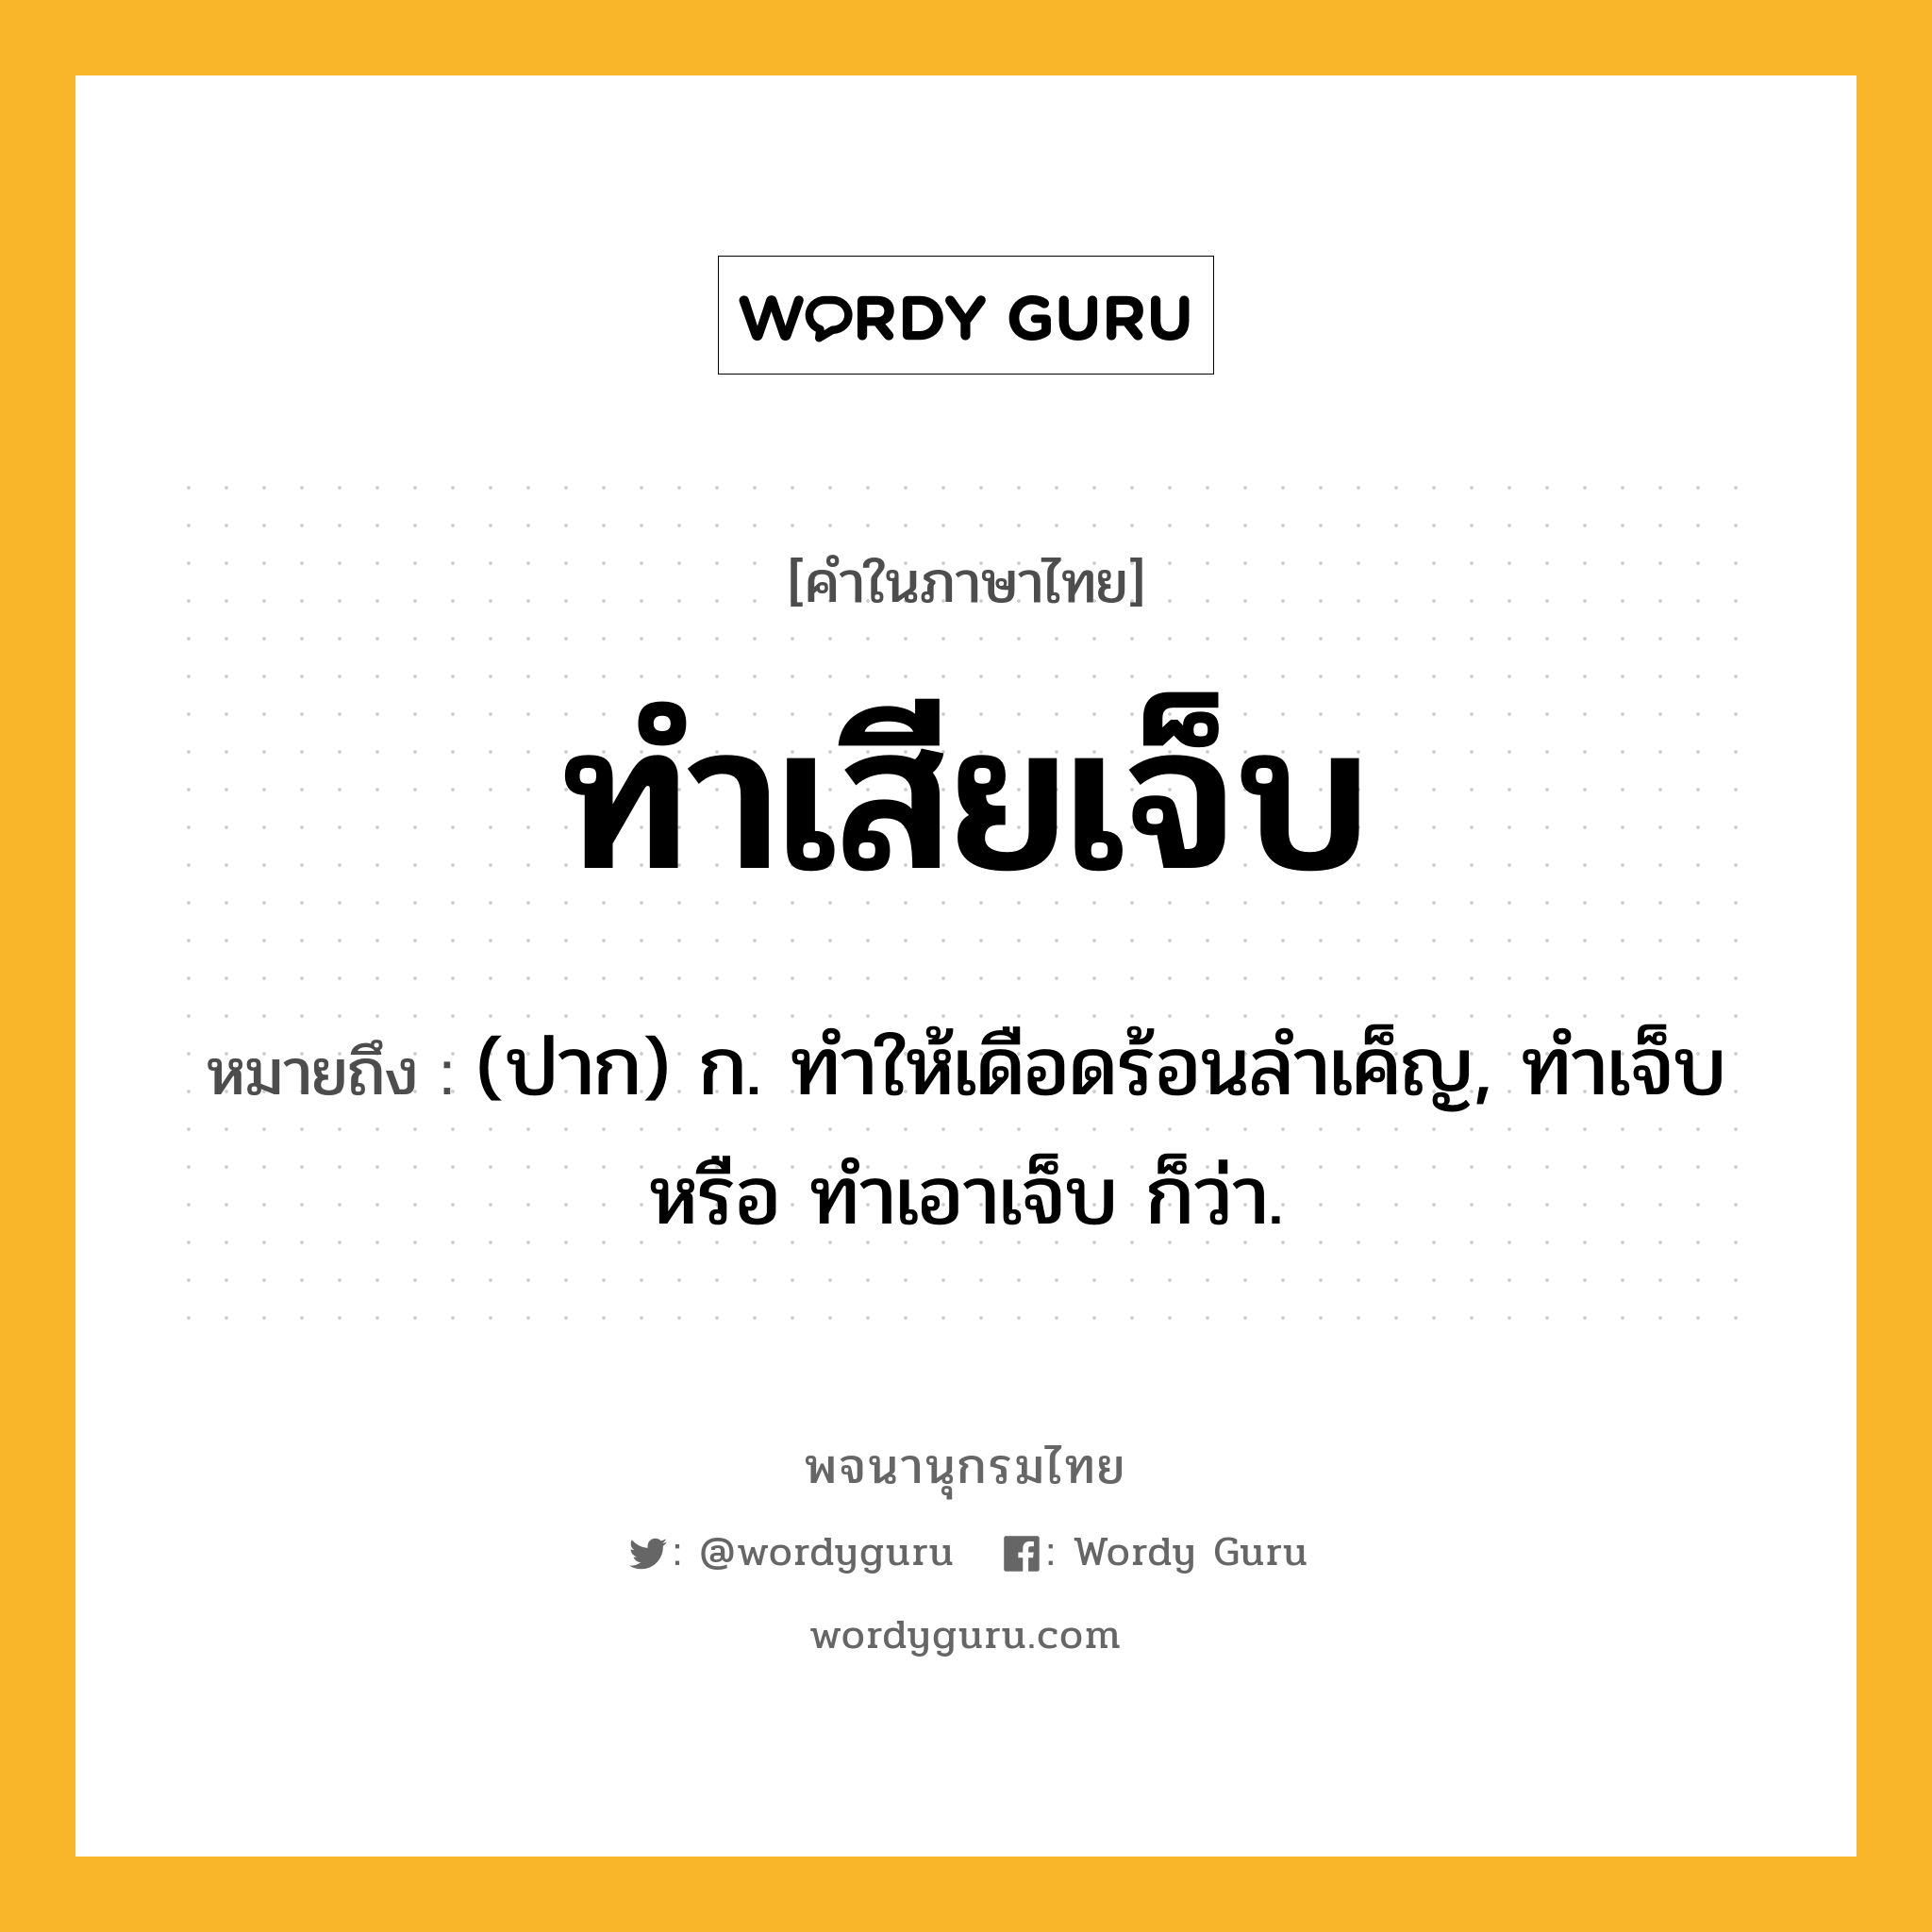 ทำเสียเจ็บ ความหมาย หมายถึงอะไร?, คำในภาษาไทย ทำเสียเจ็บ หมายถึง (ปาก) ก. ทำให้เดือดร้อนลำเค็ญ, ทำเจ็บ หรือ ทำเอาเจ็บ ก็ว่า.